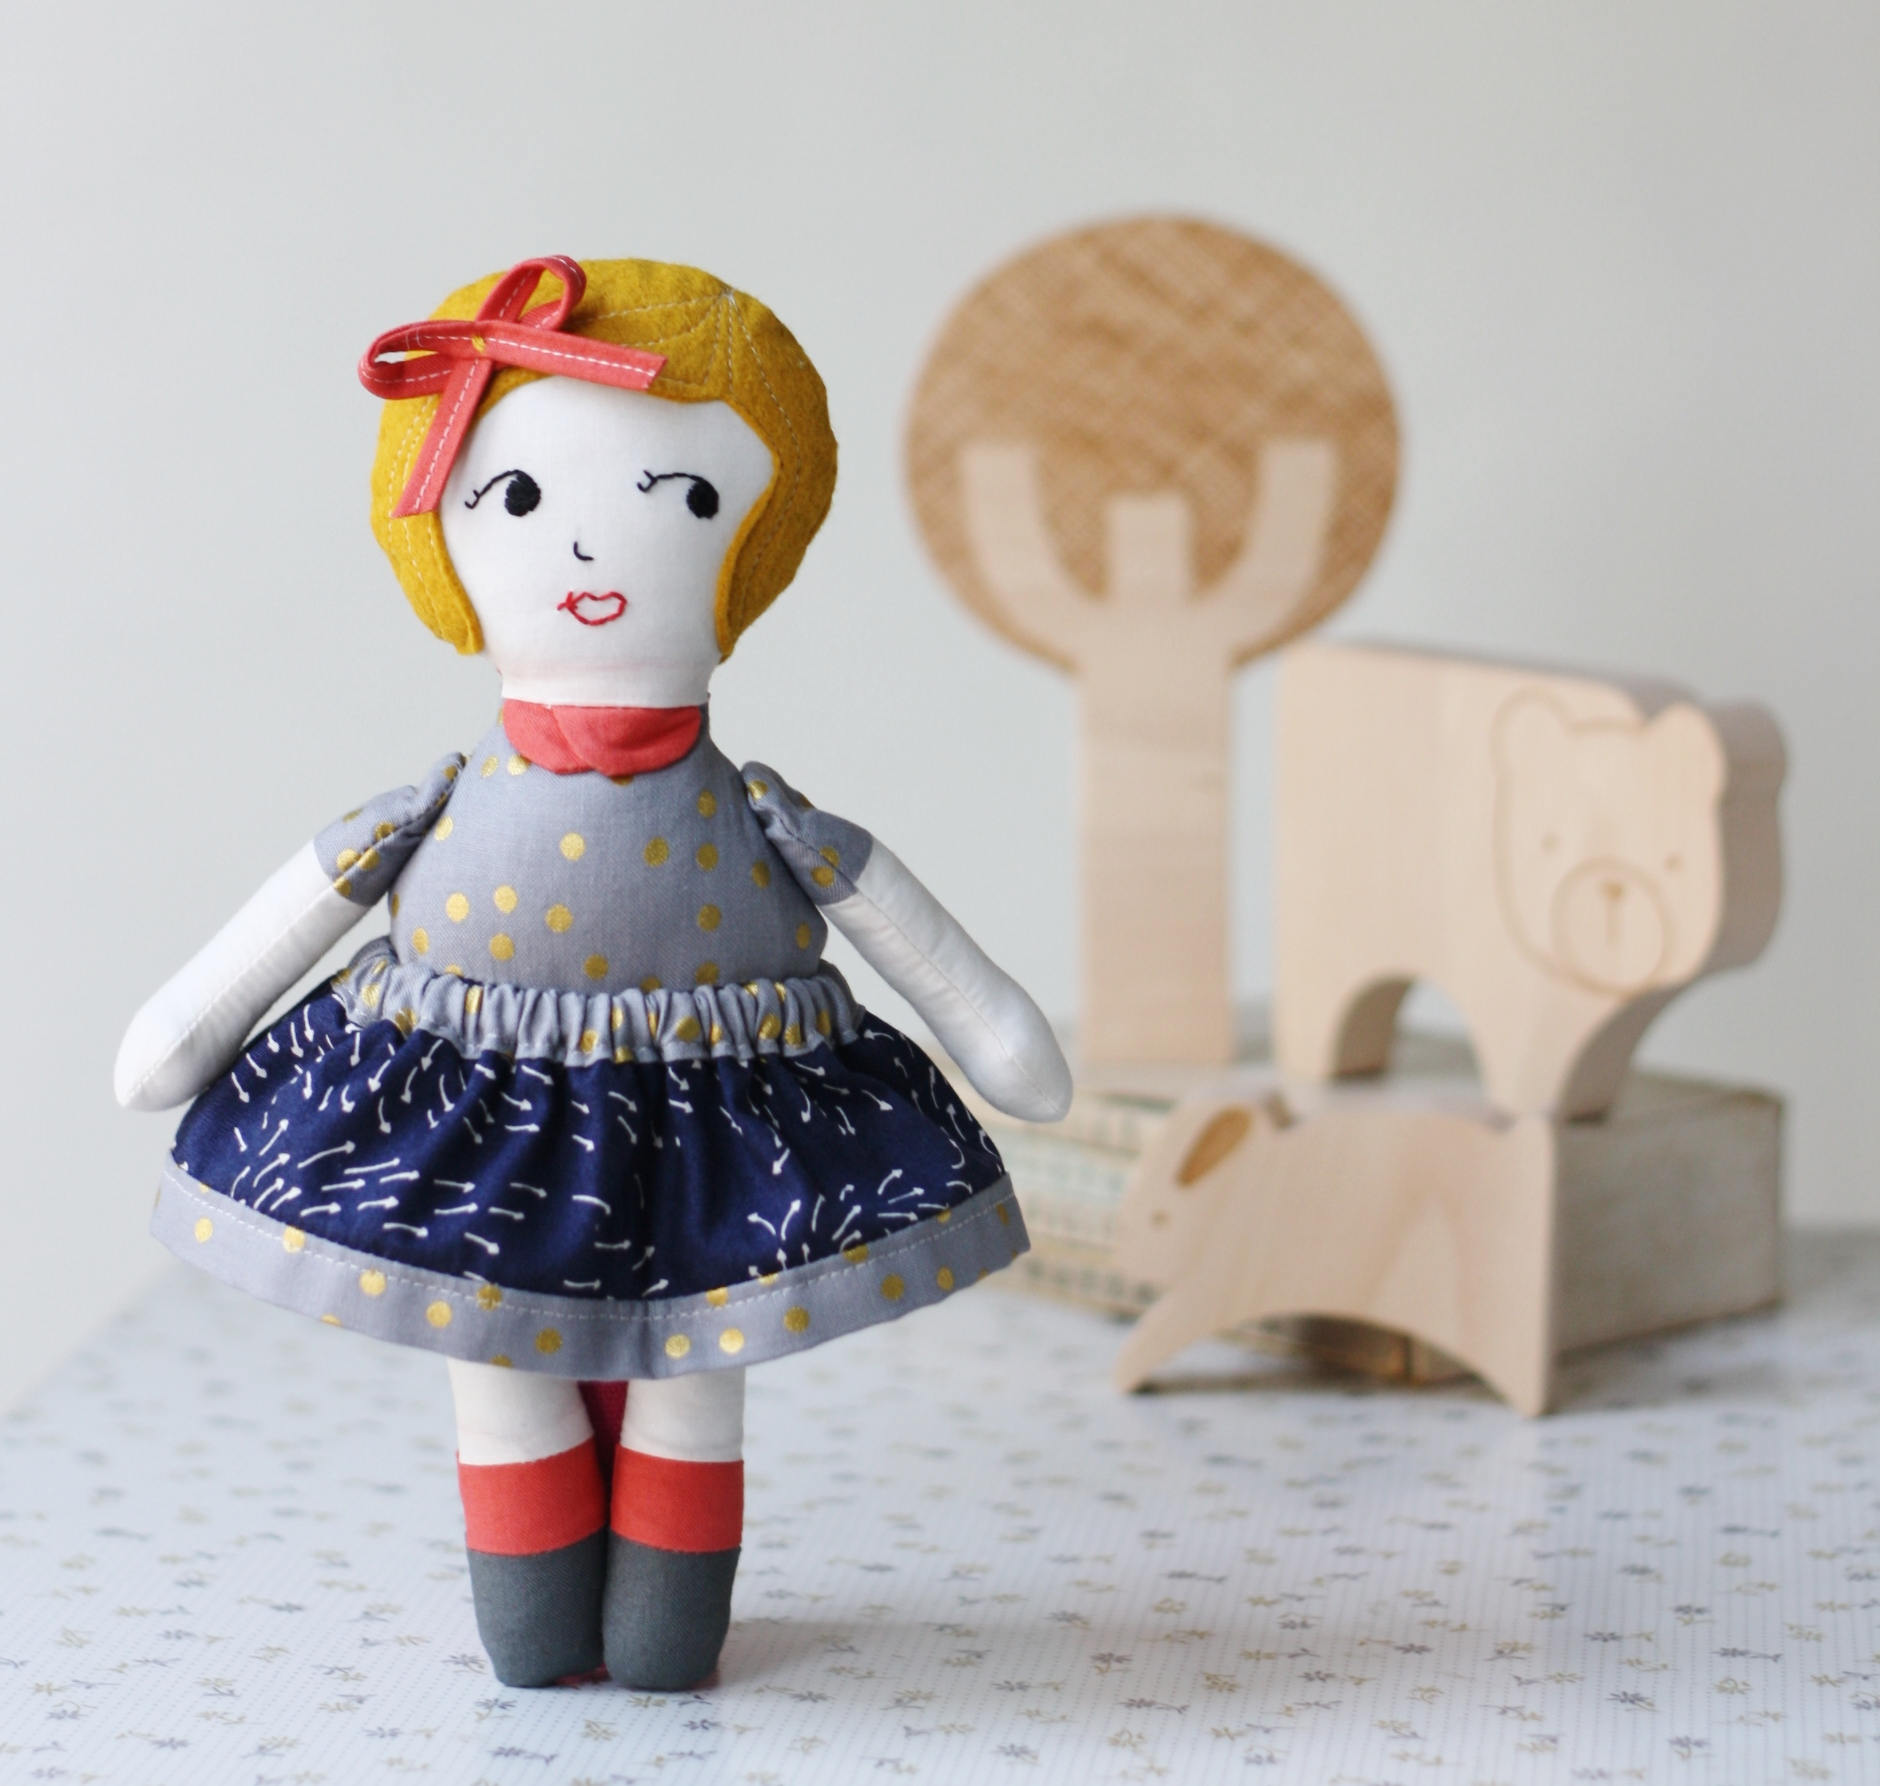 Doll Sewing Pattern, PDF Sewing Pattern, Stuffed Doll Sewing Pattern